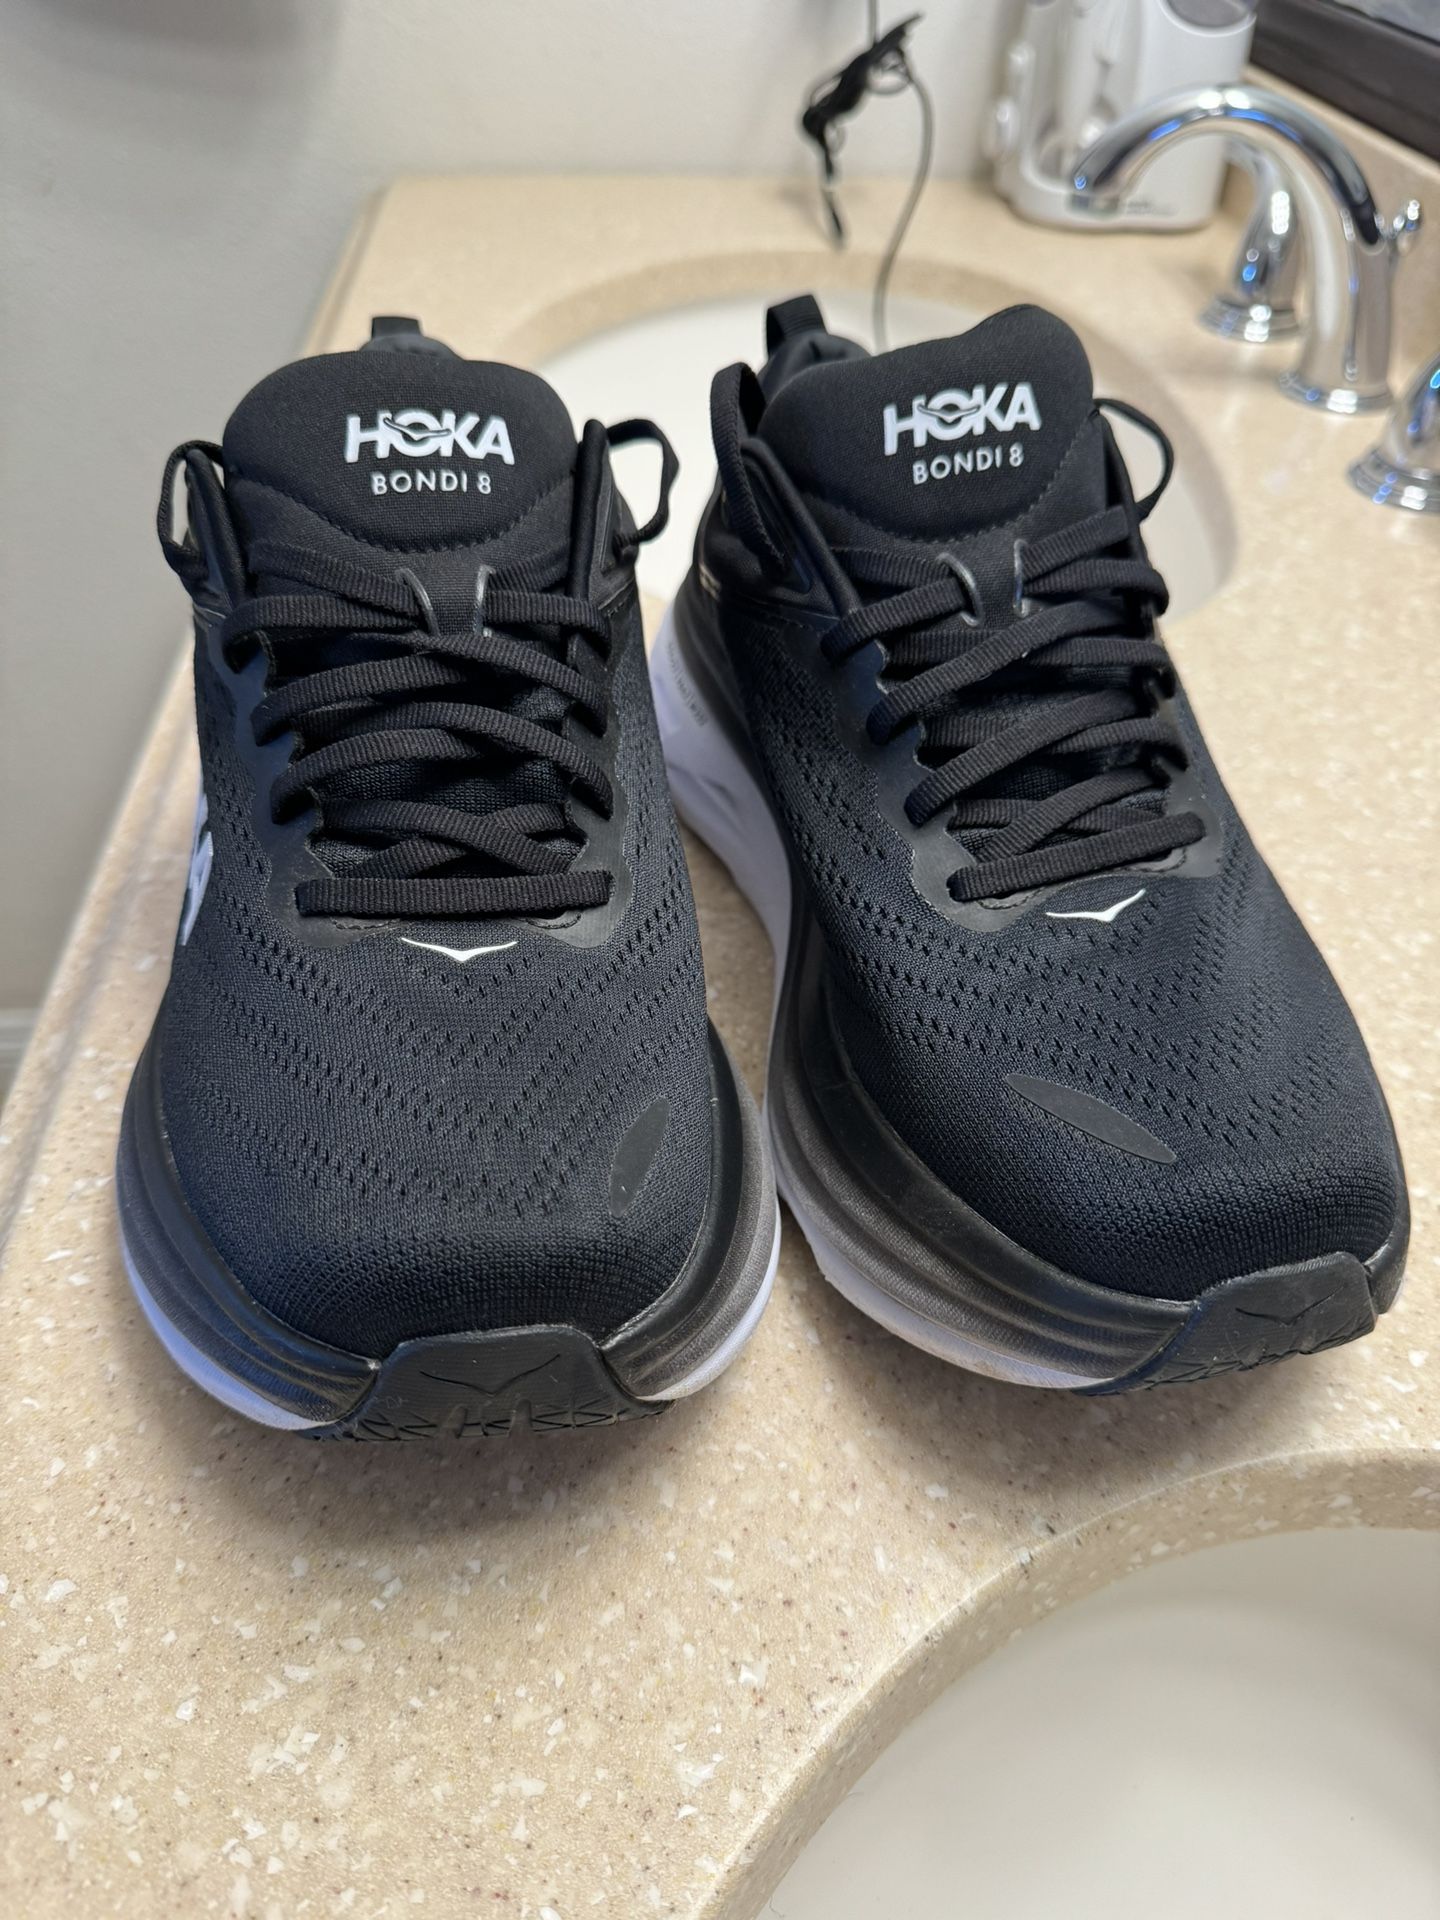 HOKA Bondi 8 Women Shoes for Sale in Whittier, CA - OfferUp